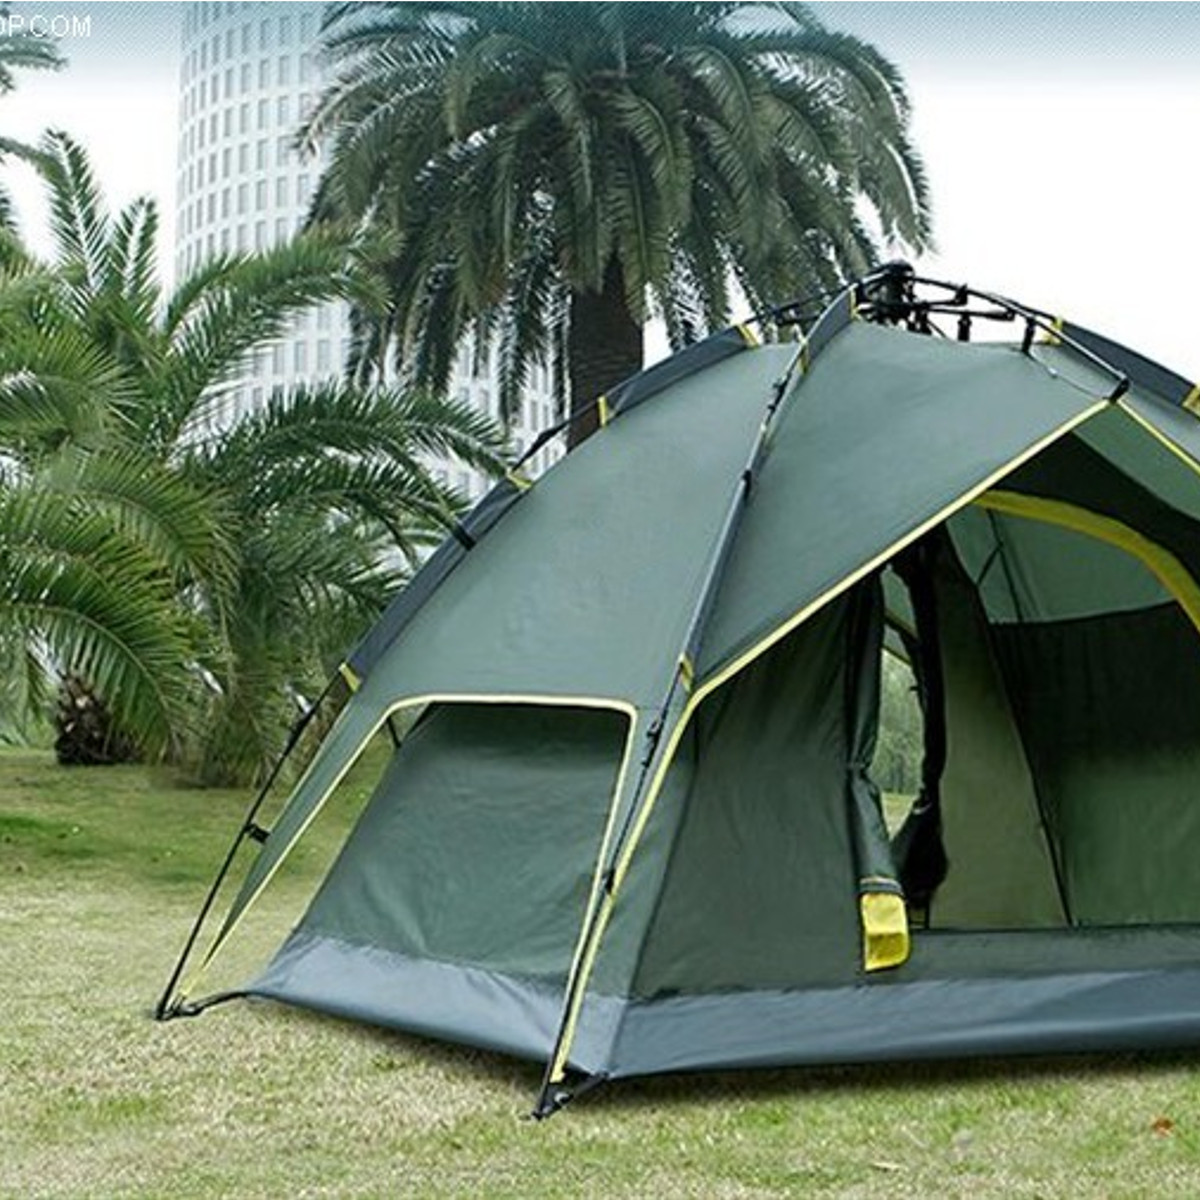 Палатки зонтичного типа. Палатка туристическая Outdoor tent258. Палатка Outdoor Tent 5м 2513. Шатёр походный XR-1811. Палатка туристическая 3 местная St-9120.